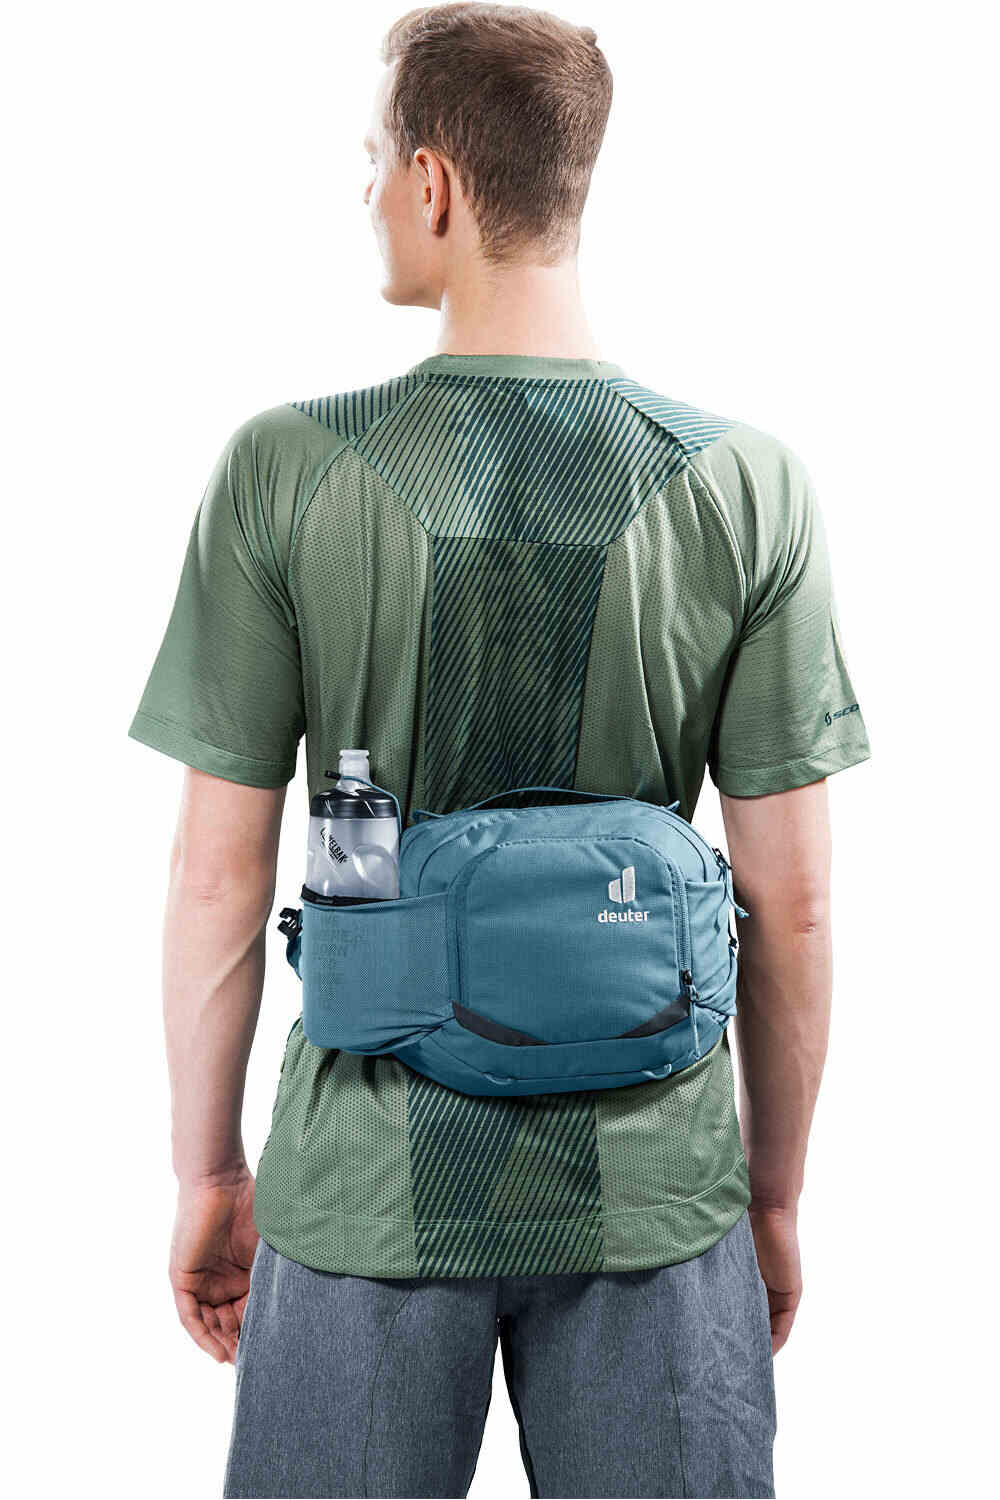 Deuter mochila hidratación Pulse Pro 5 vista frontal